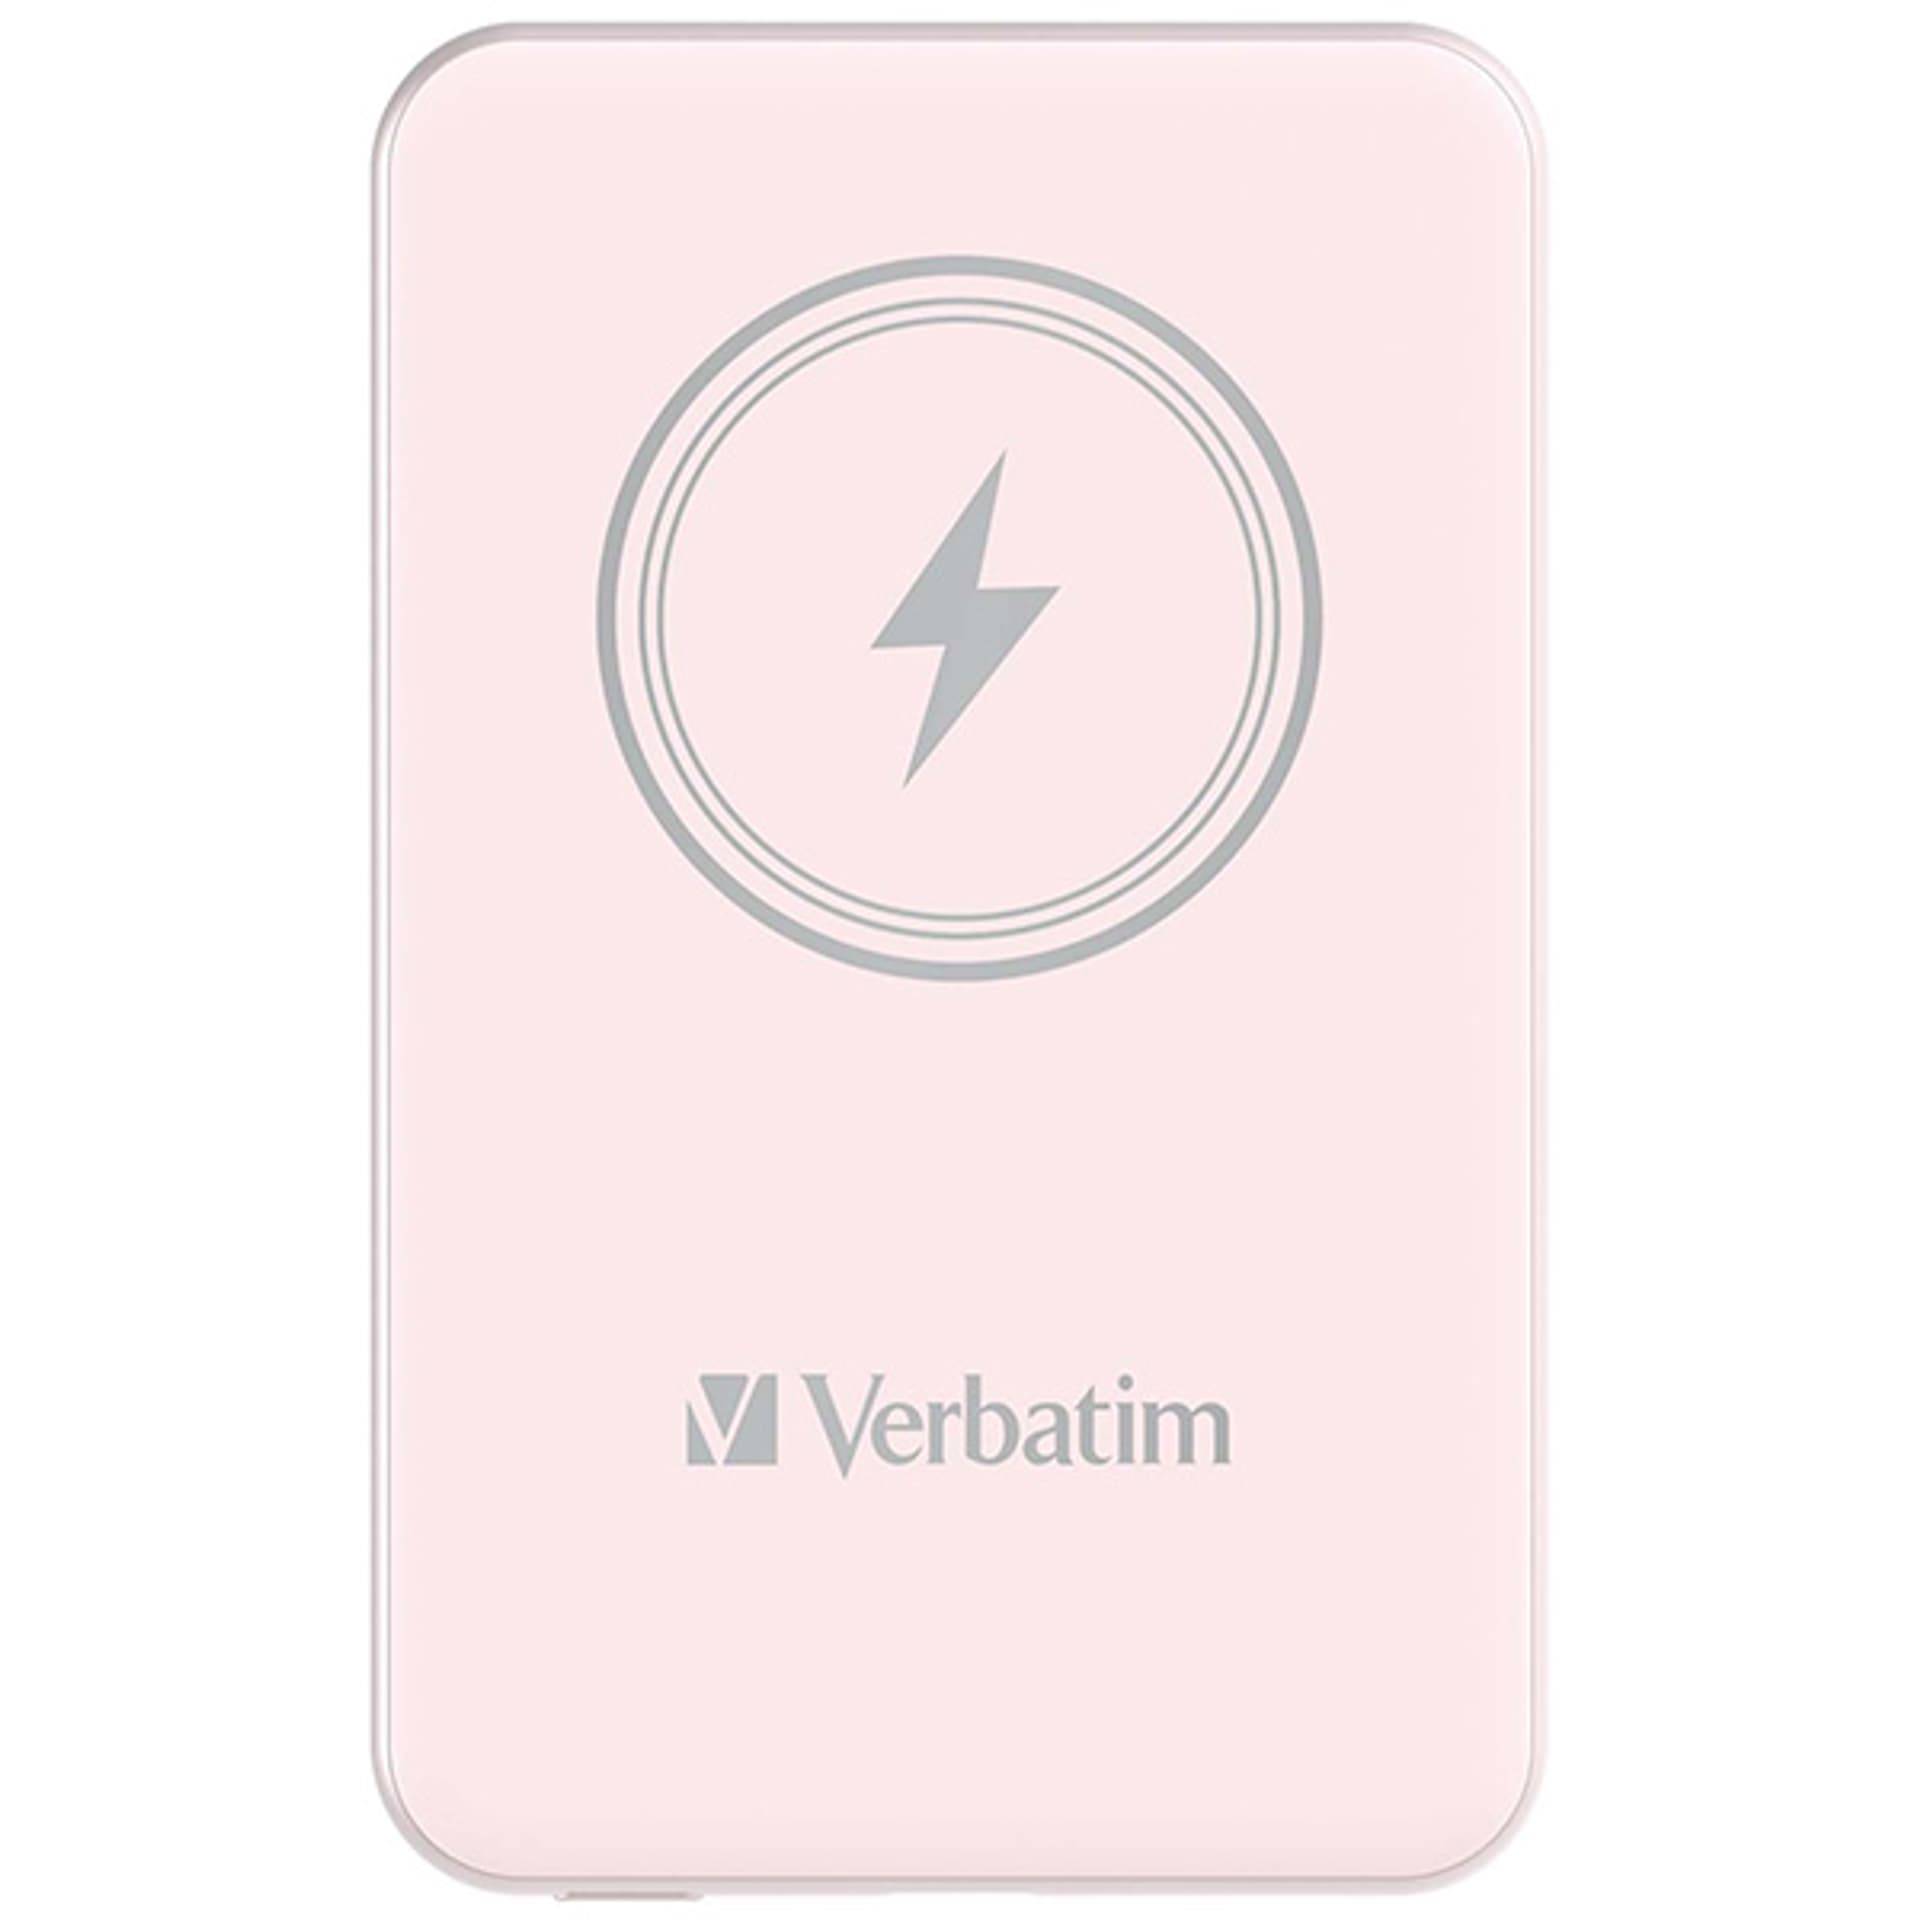 Verbatim Charge 'n' Go Magnetic Wireless Power Bank 5000mAh różowy - darmowy odbiór w 22 miastach i bezpłatny zwrot Paczkomatem aż do 15 dni